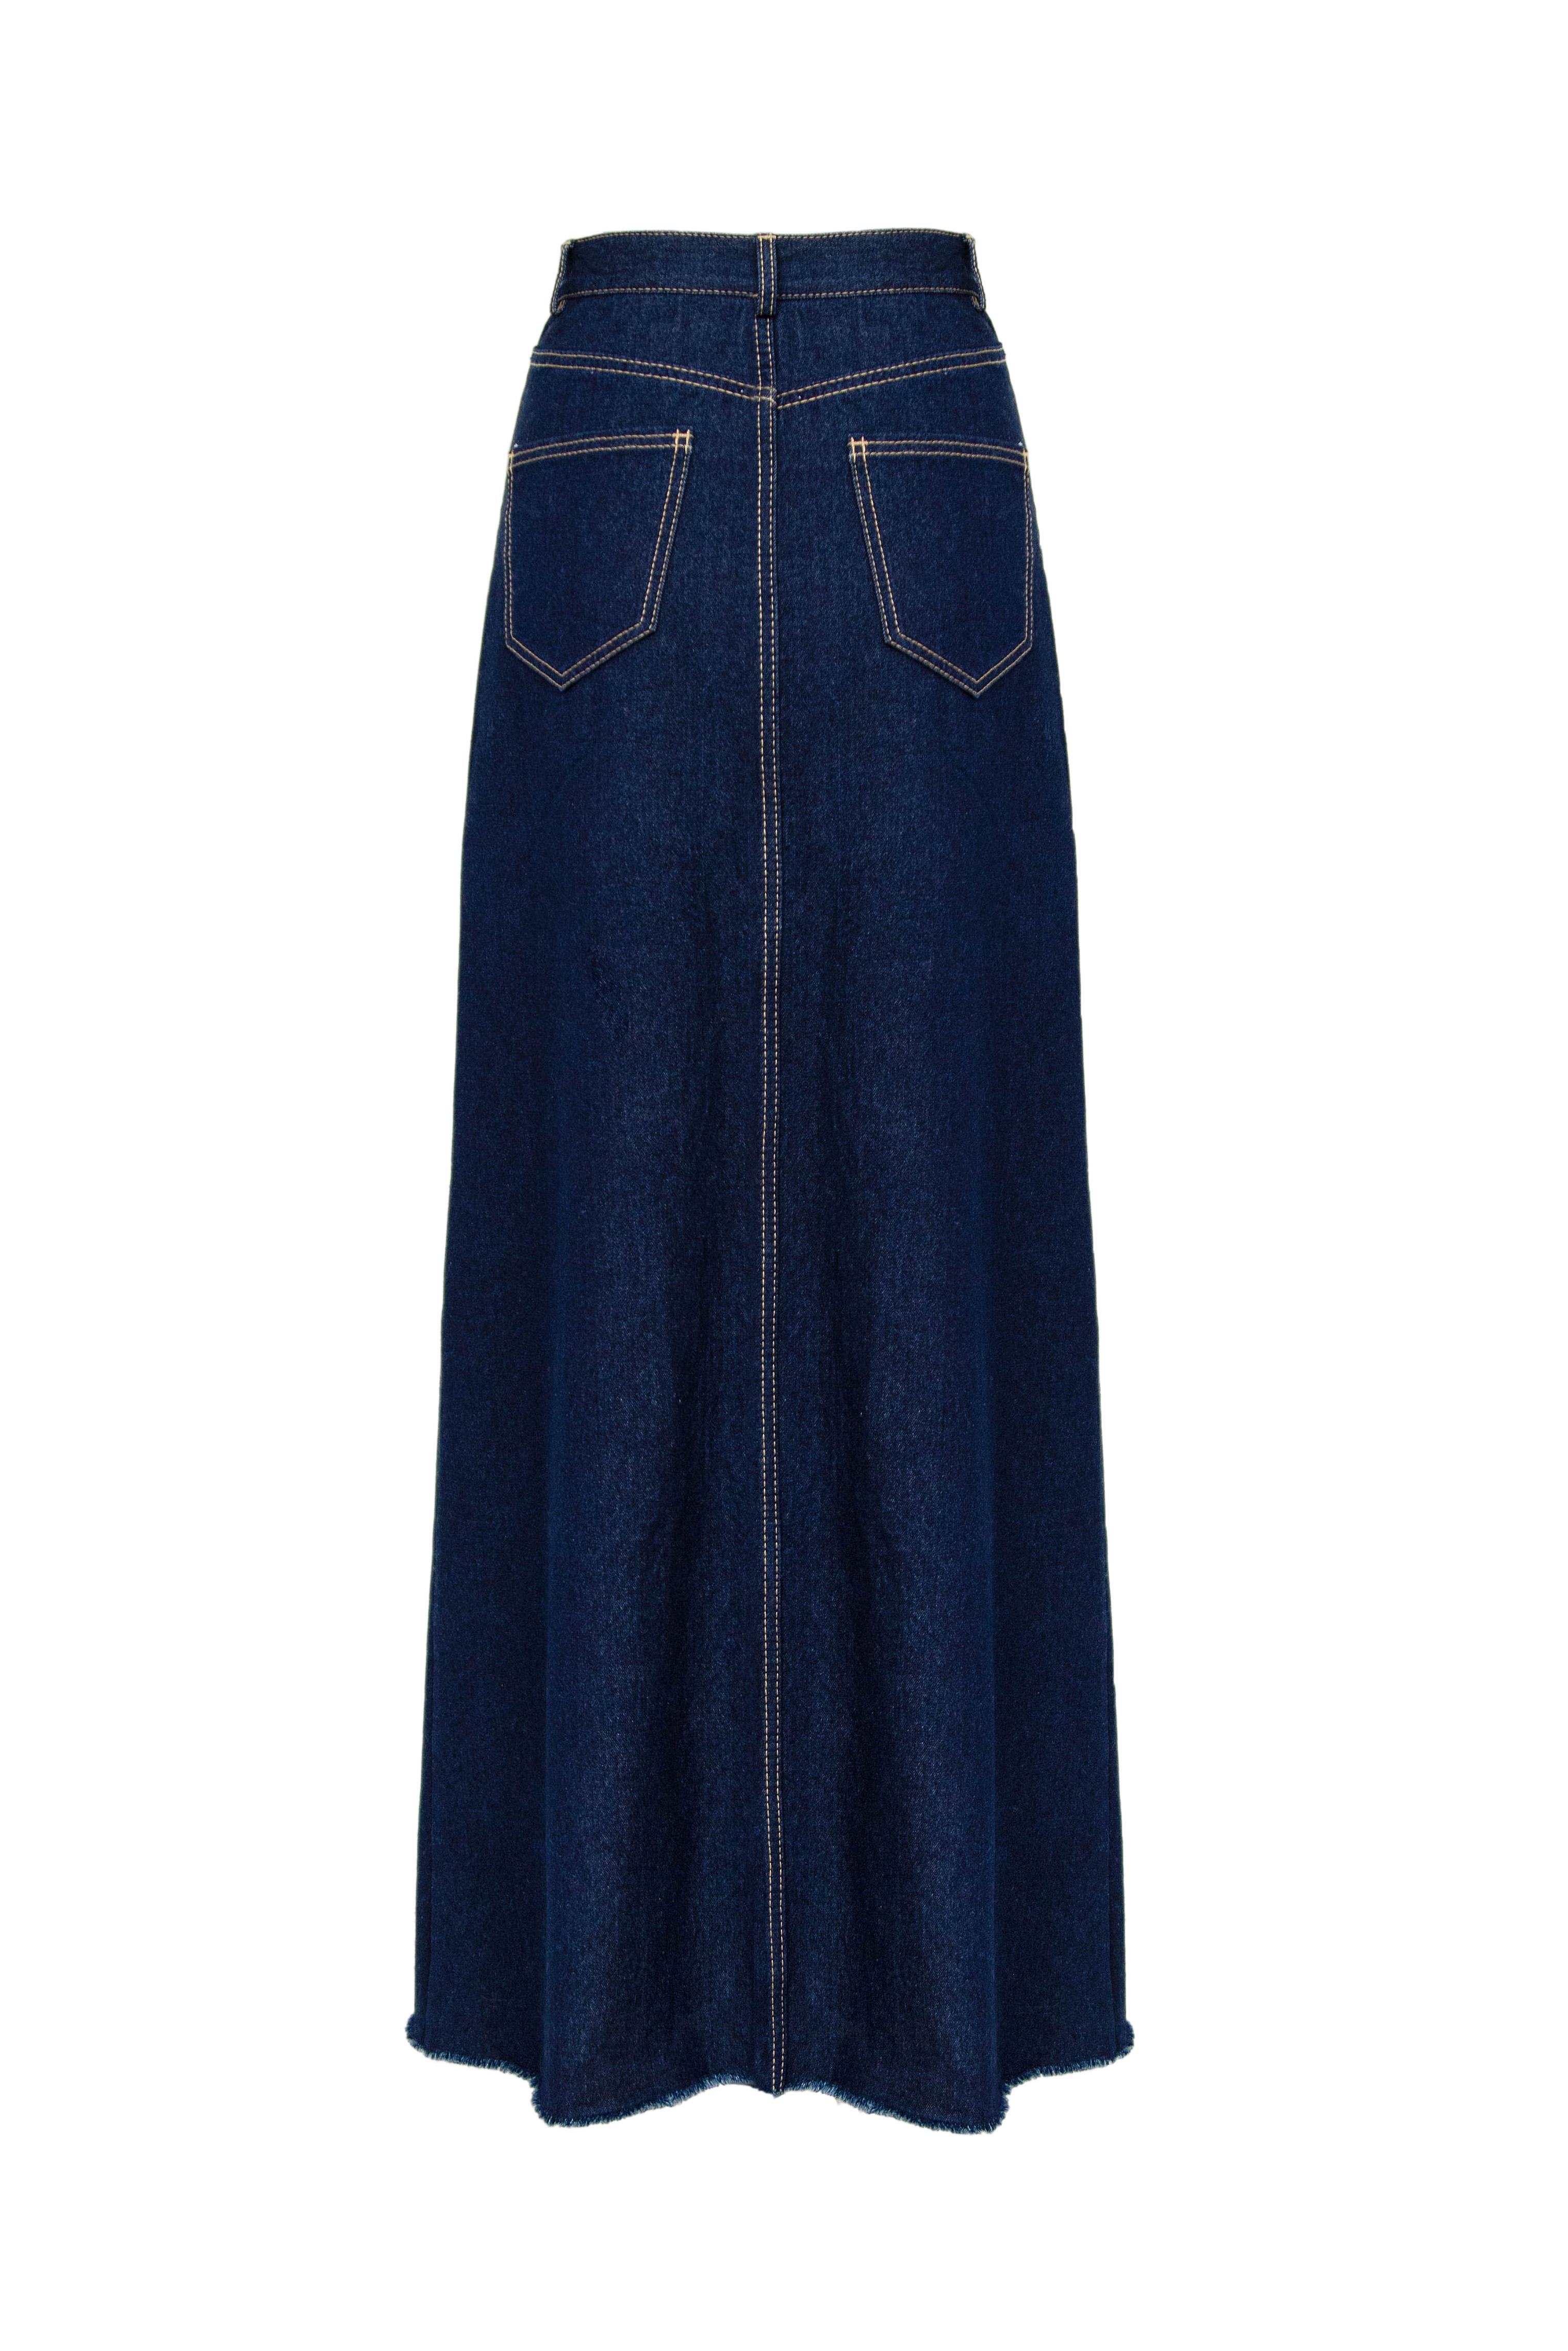 Skirt 4379-43 dark blue from BRUSNiKA